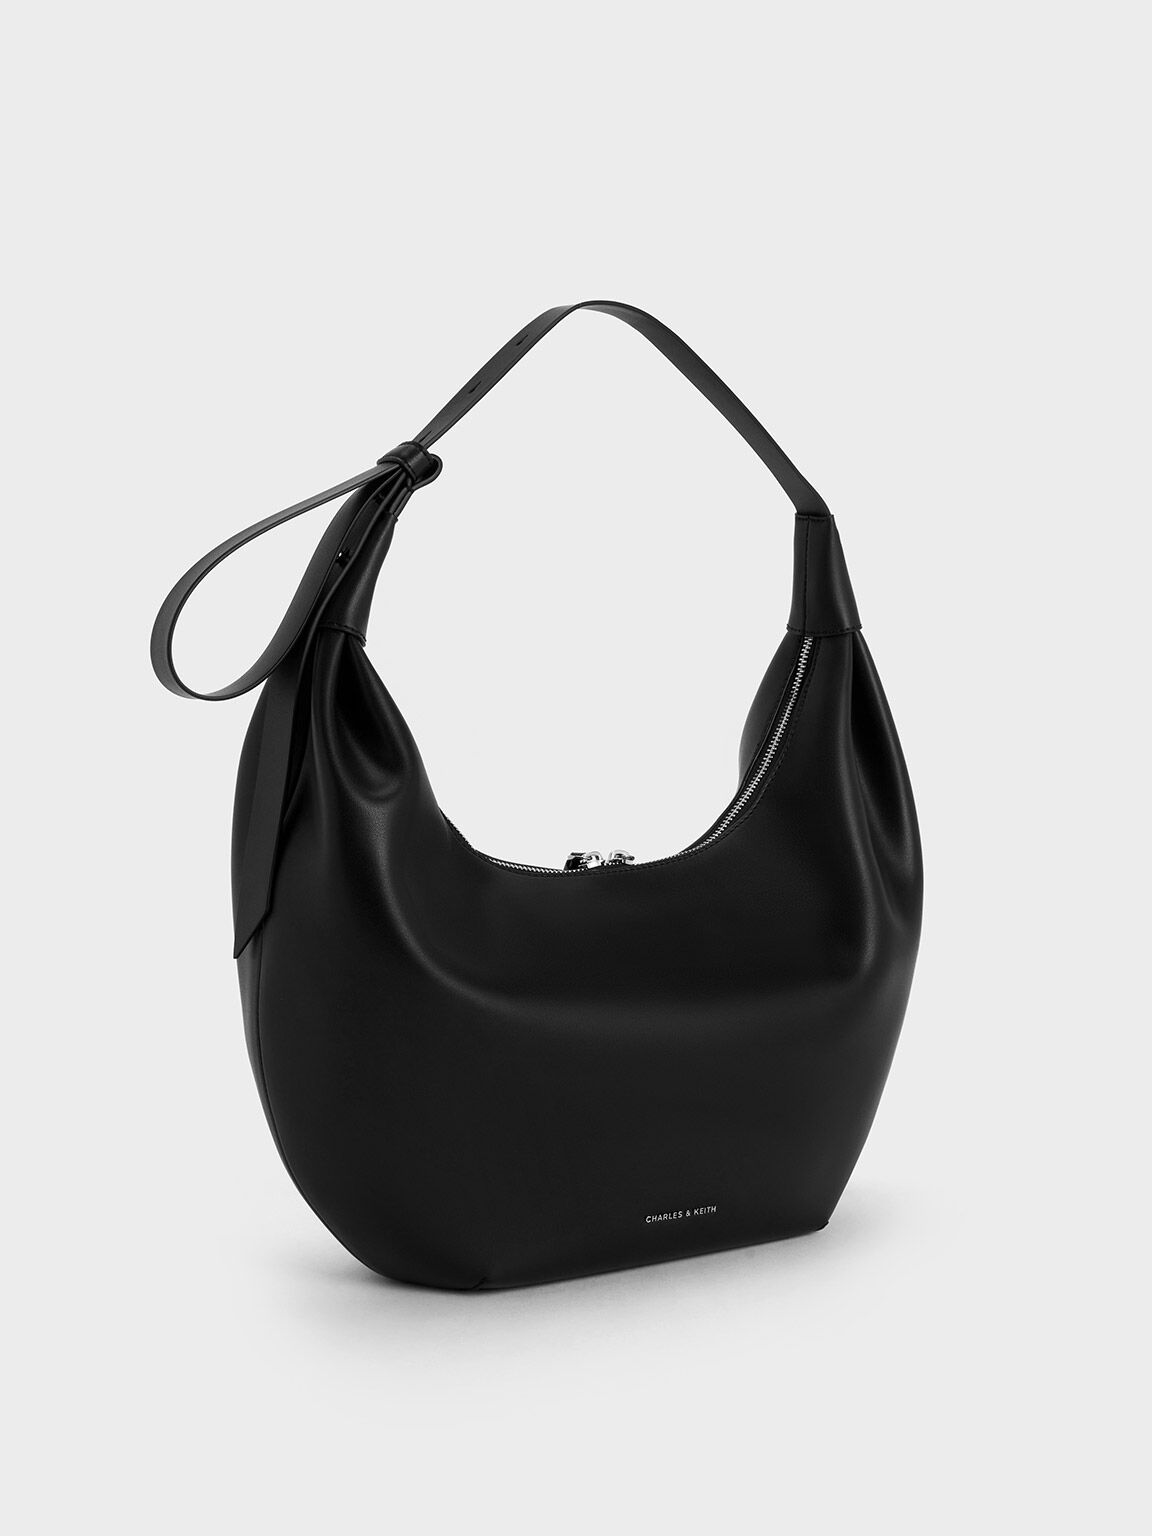 Black Hobo Bags & Purses for Women | Nordstrom